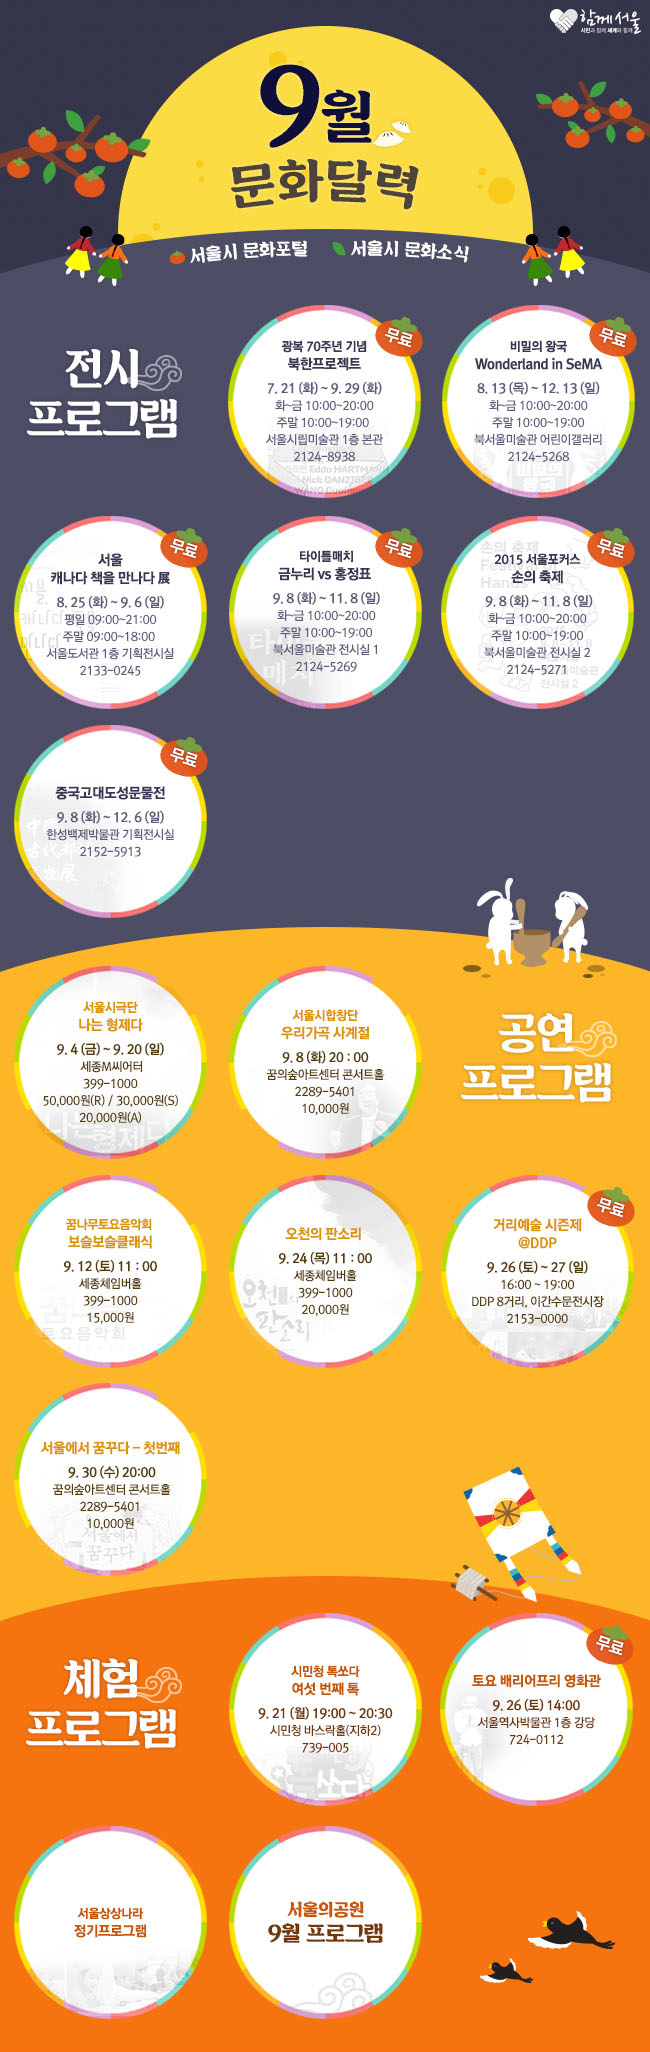 서울시 9월의 문화달력